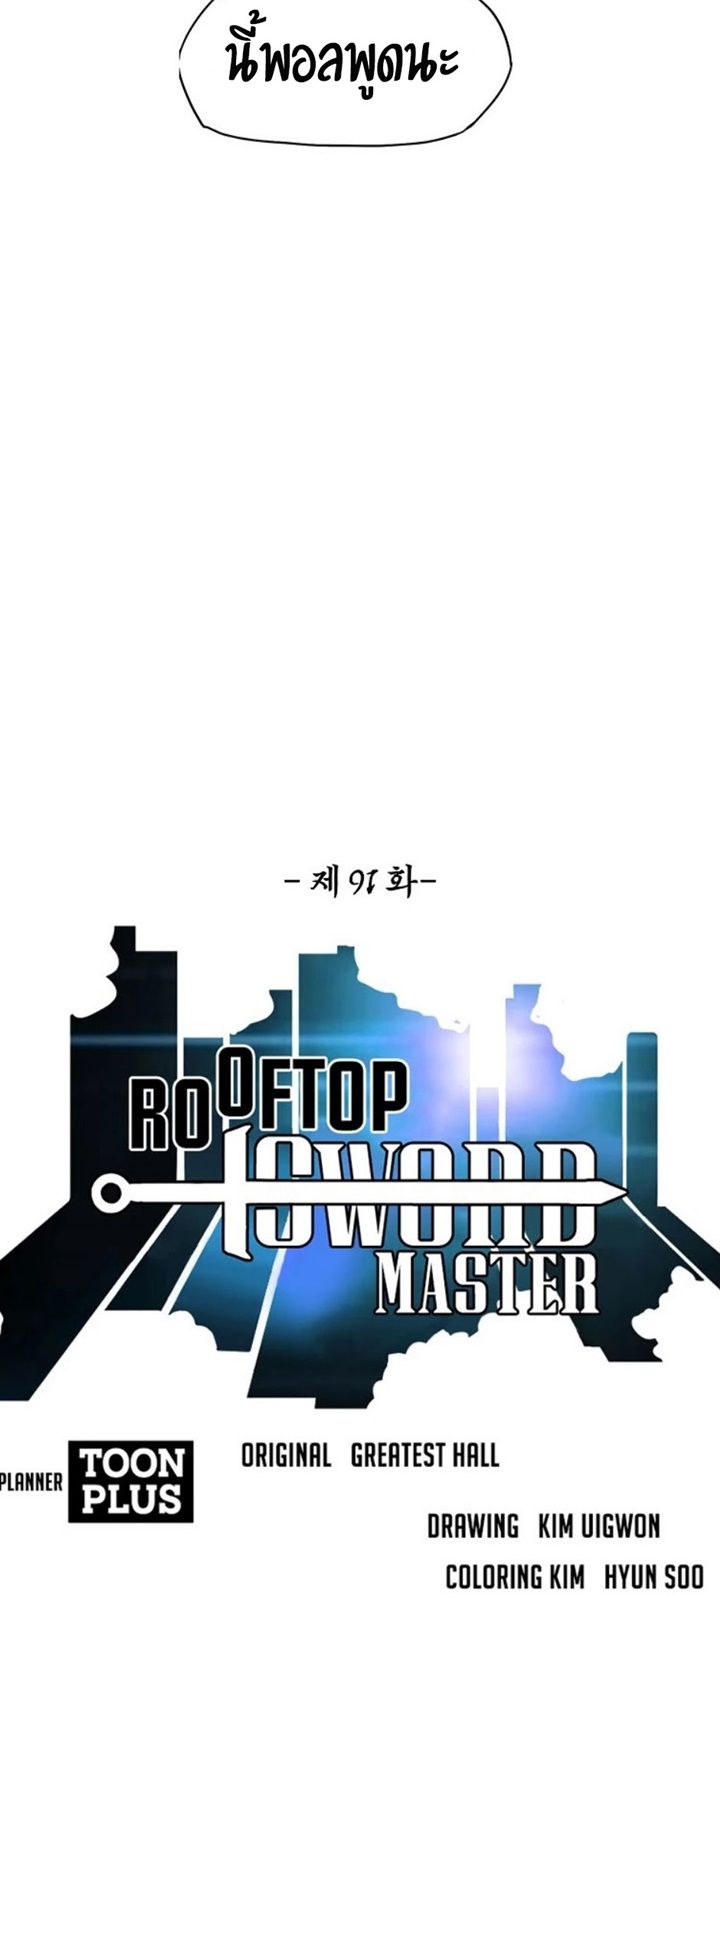 Rooftop Sword Master 91 (10)